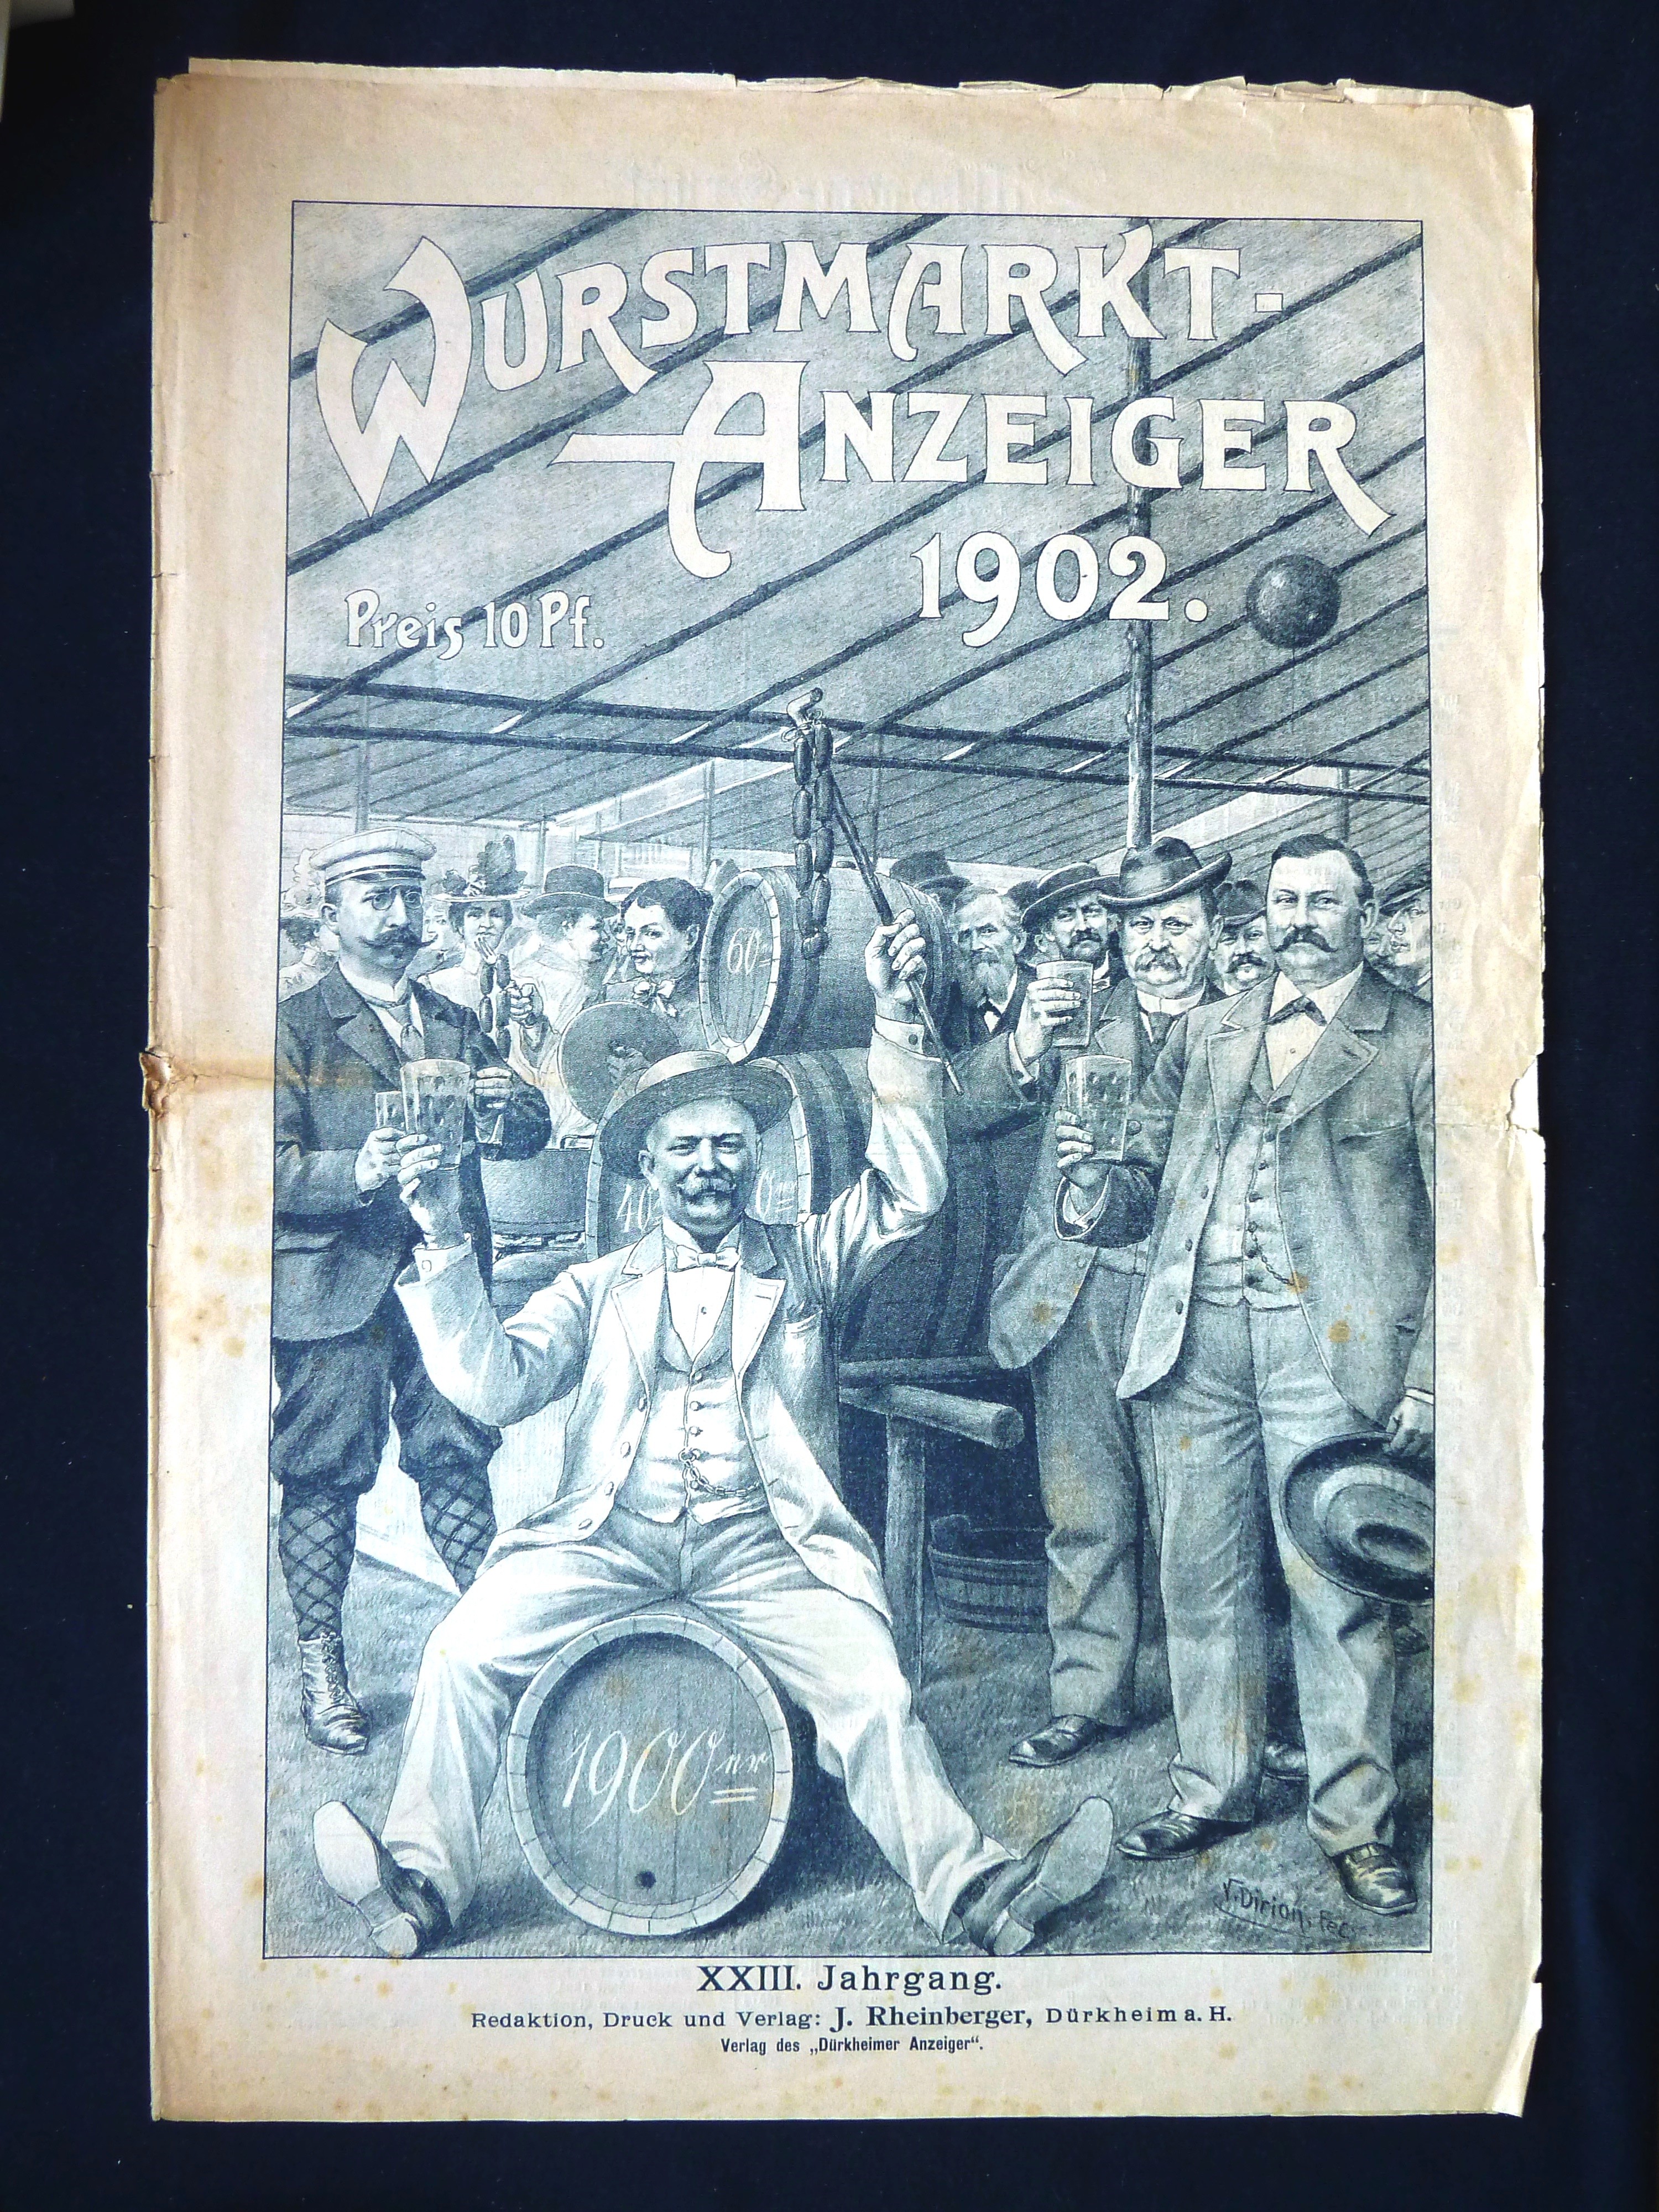 Zeitung; Anzeiger: "Wurstmarkt-Anzeiger"; J. Rheinberger, V. Dirion; Dürkheim a/H.; 1902 (Stadtmuseum Bad Dürkheim, Museumsgesellschaft Bad Dürkheim e.V. CC BY-NC-SA)